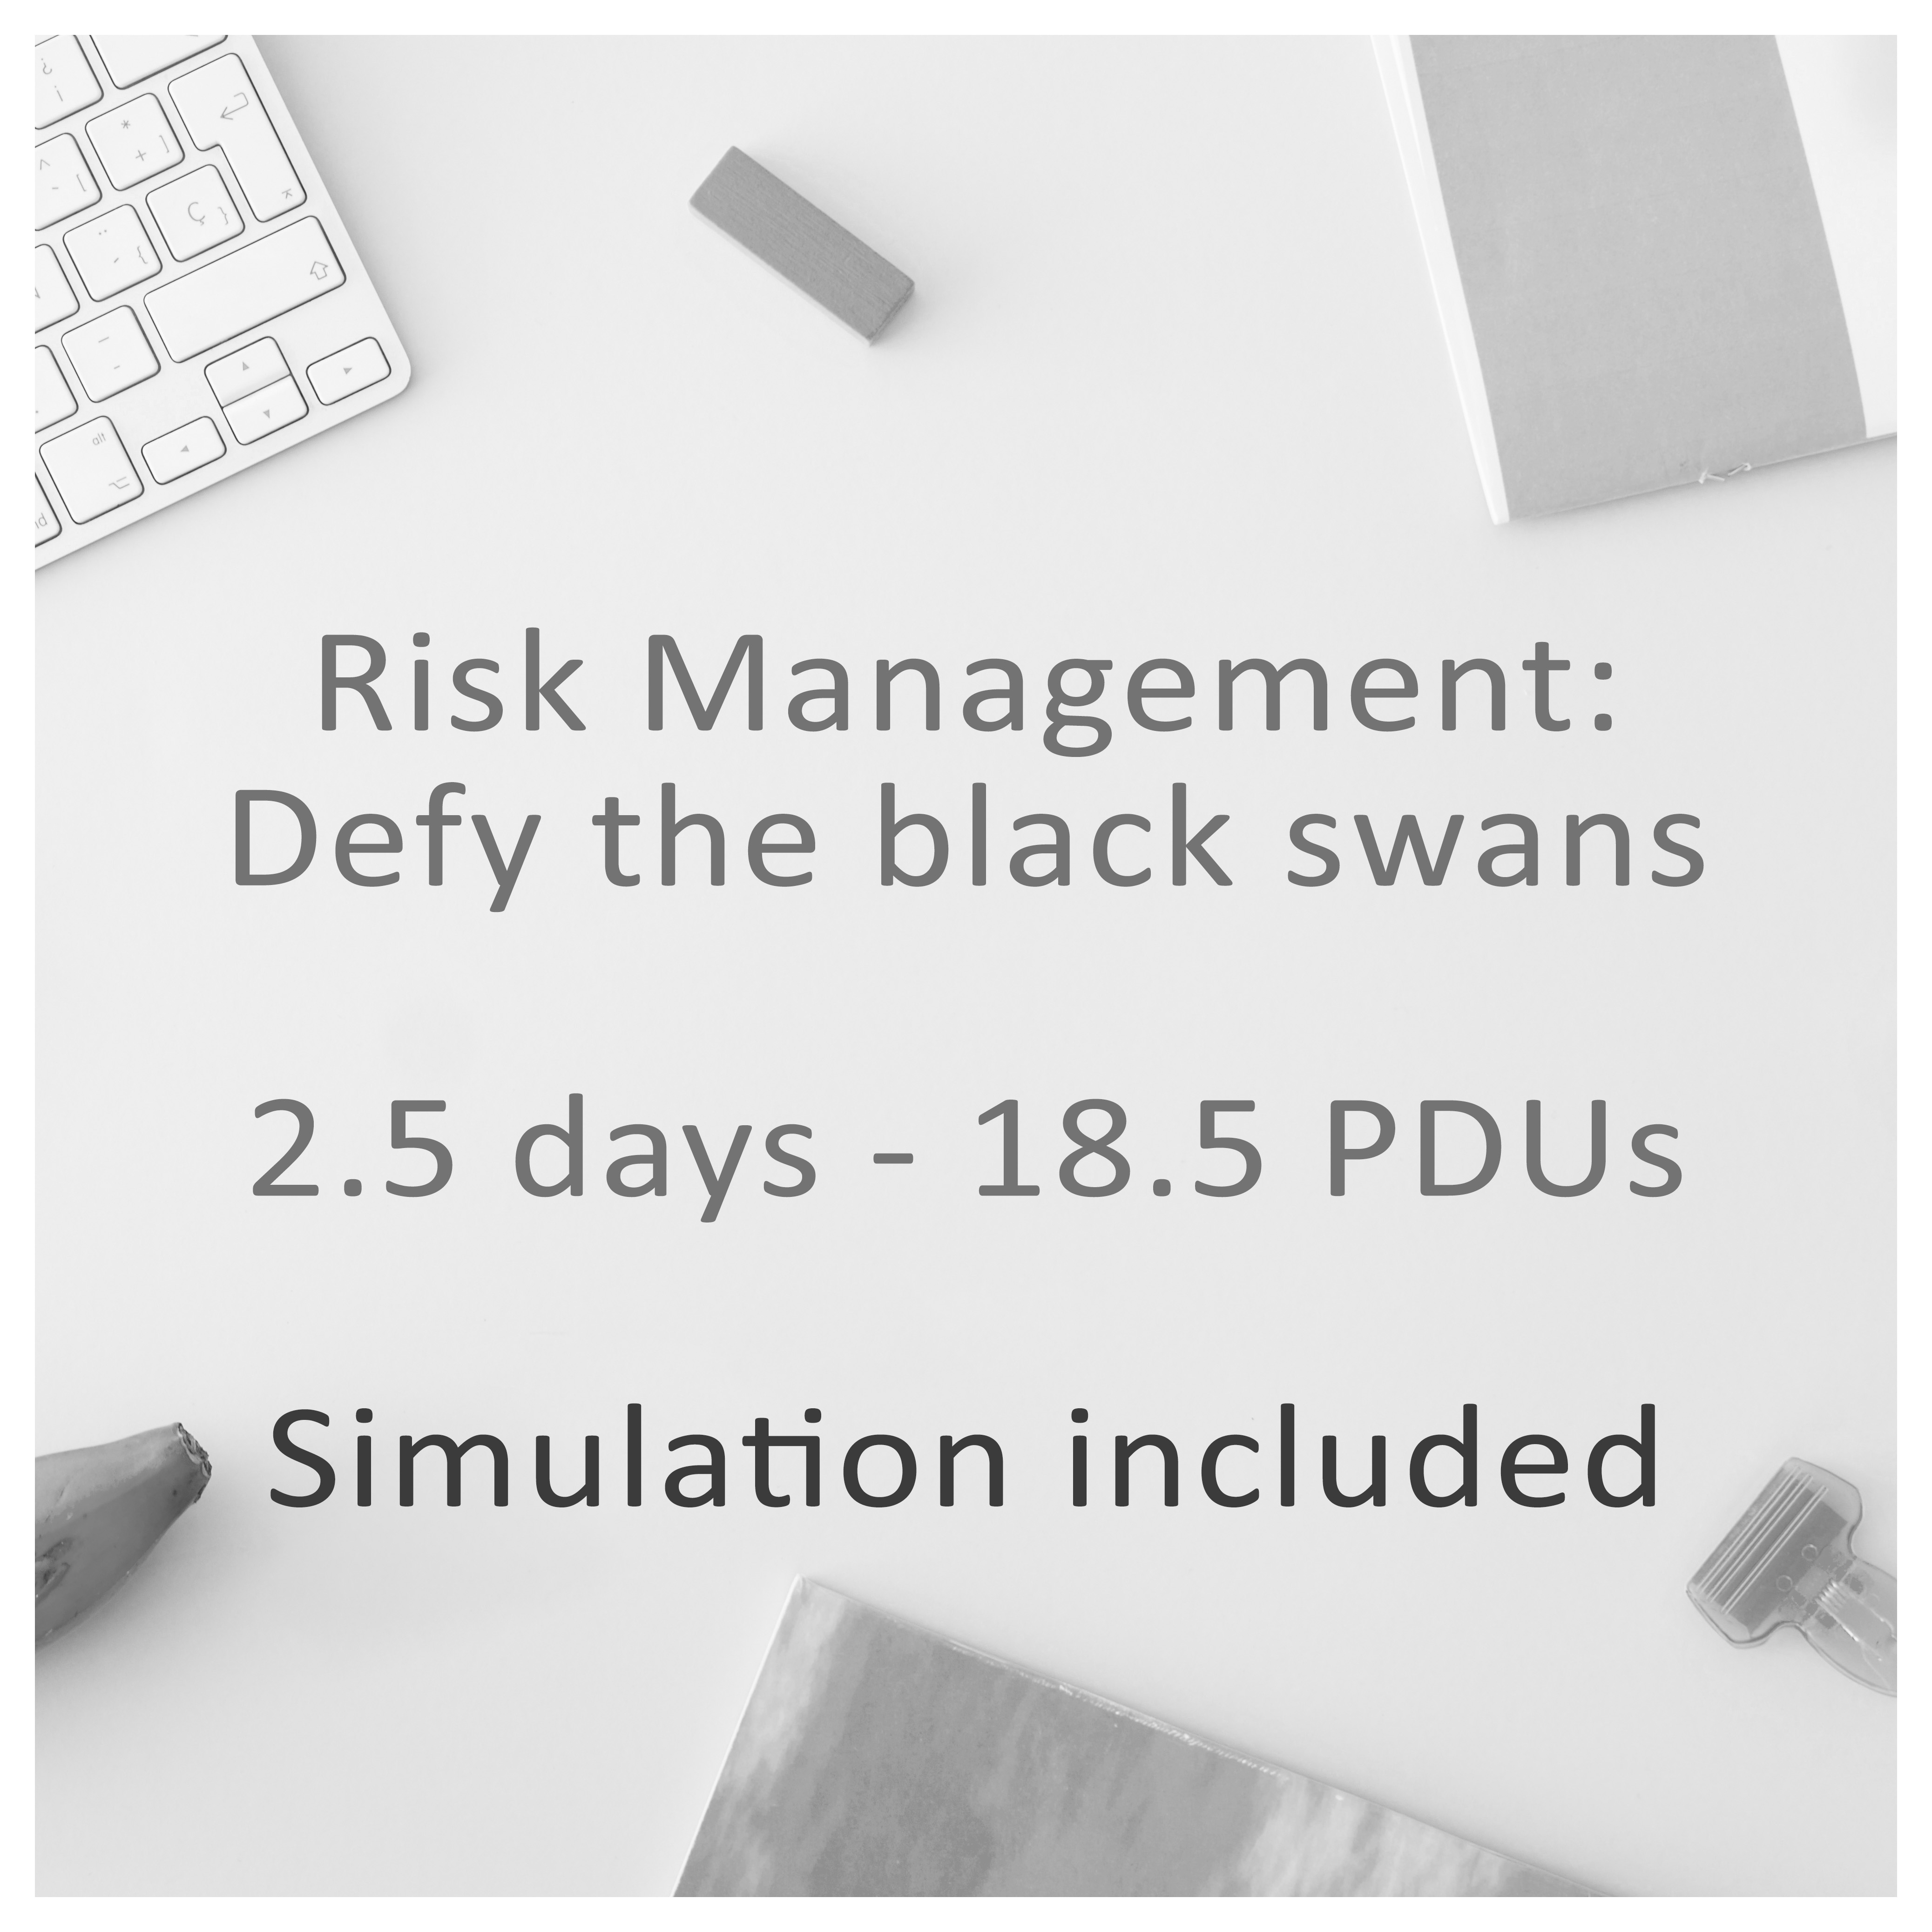 Risk Management: Defy the black swans